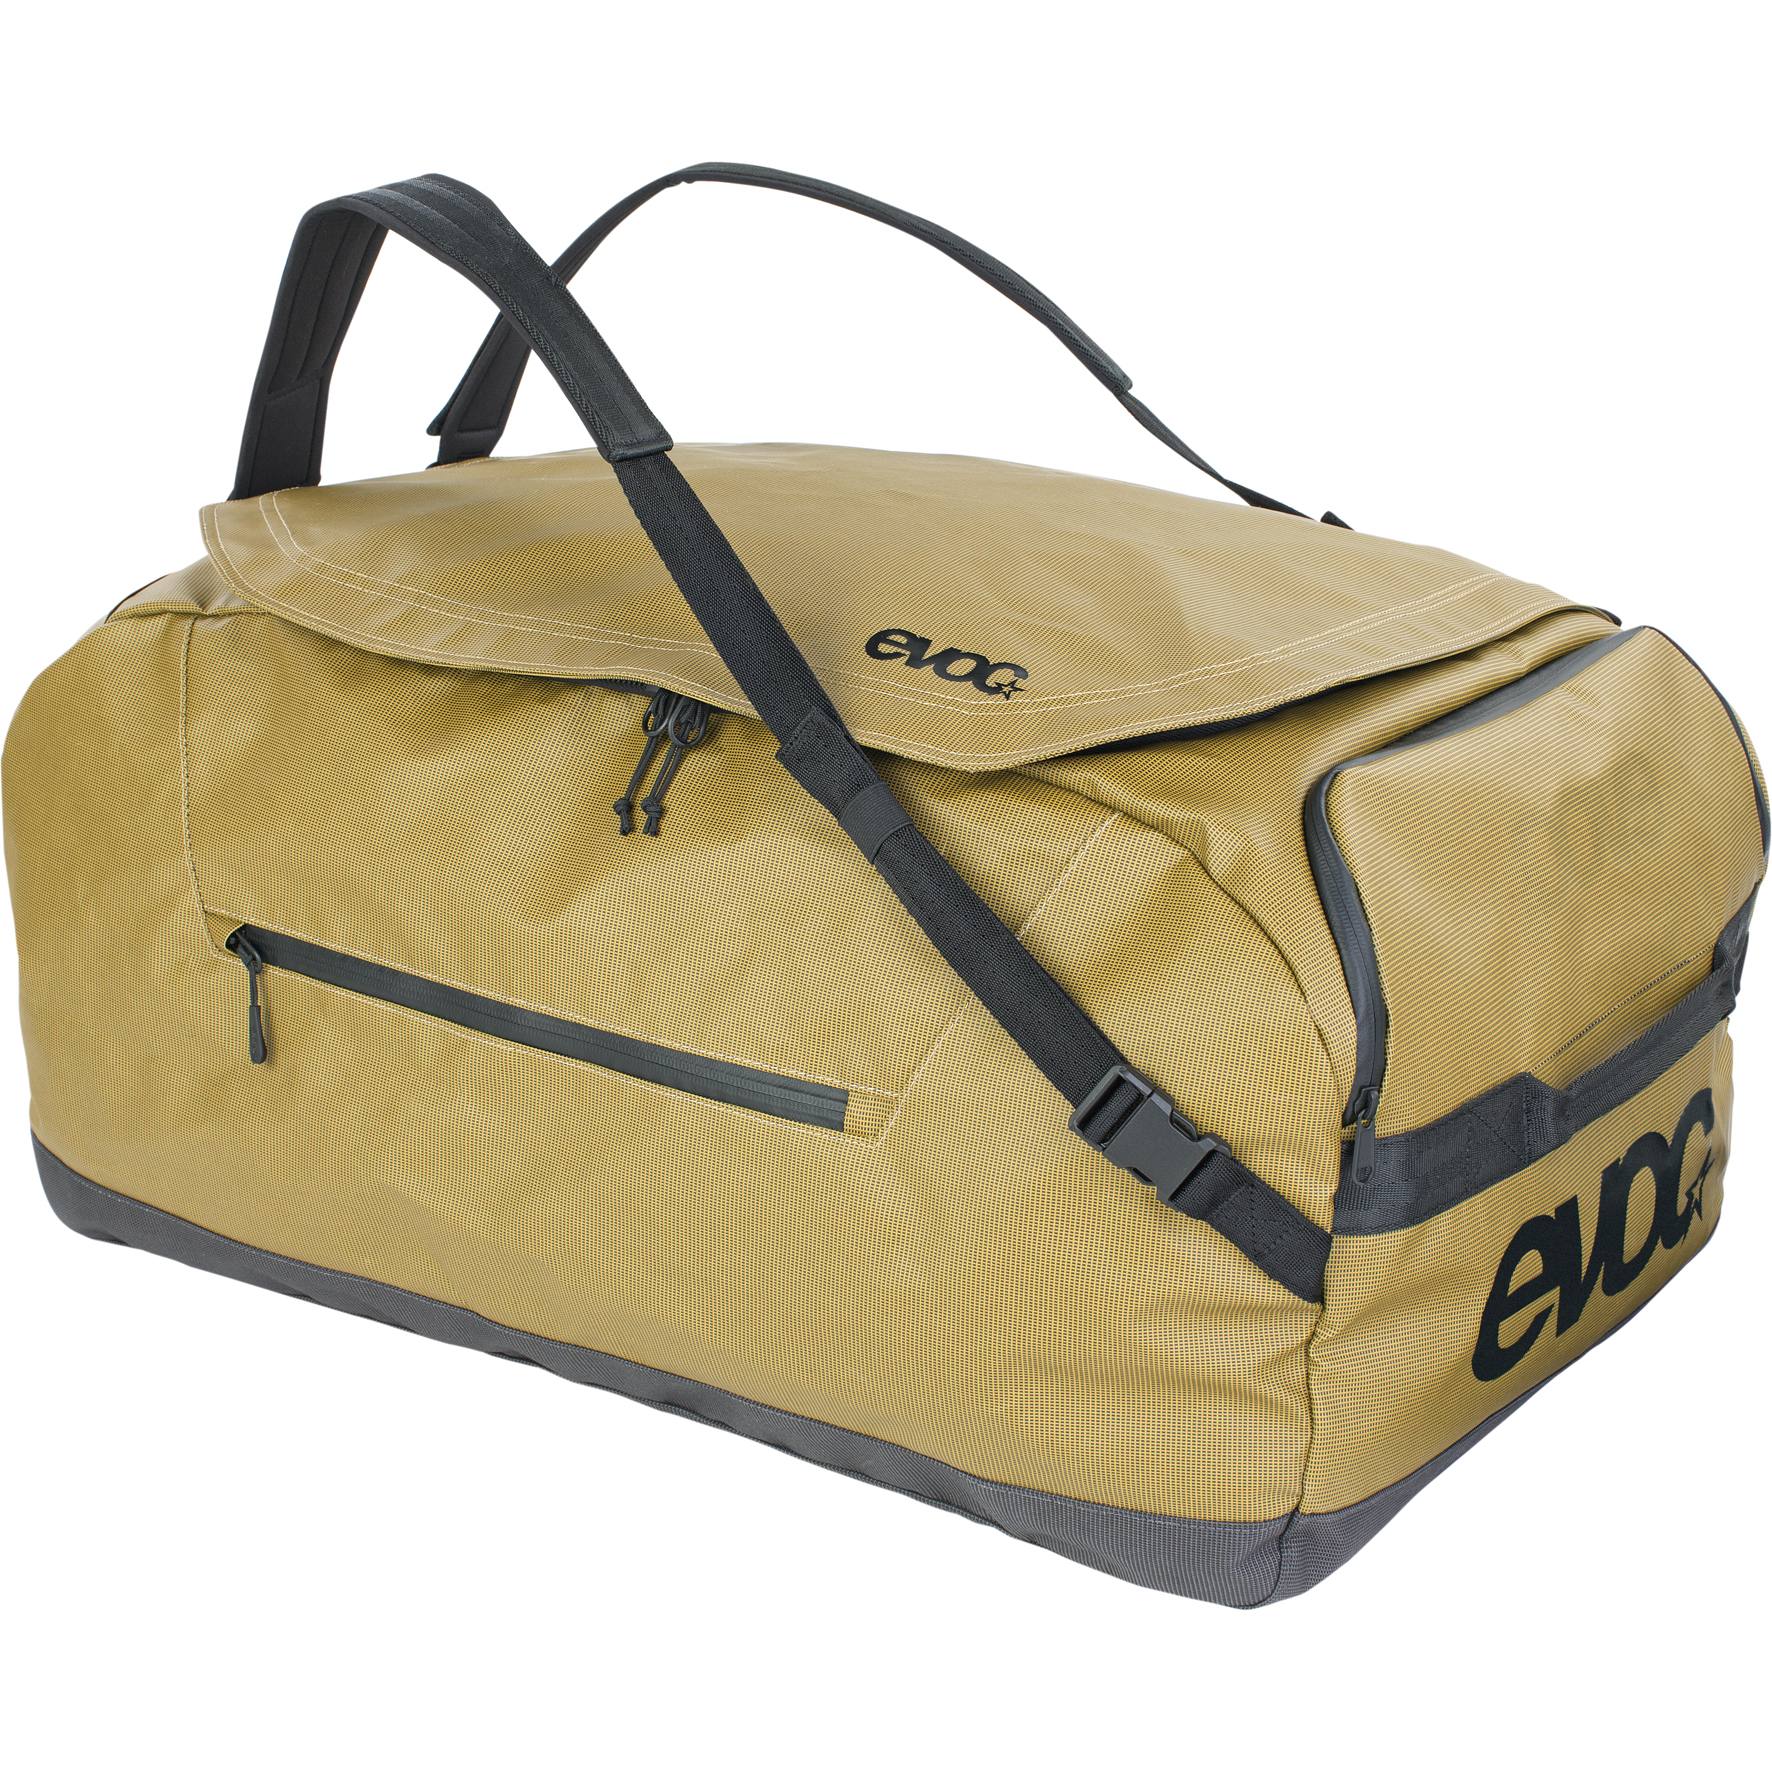 Produktbild von EVOC Duffle Bag 100L Reisetasche - Curry/Black